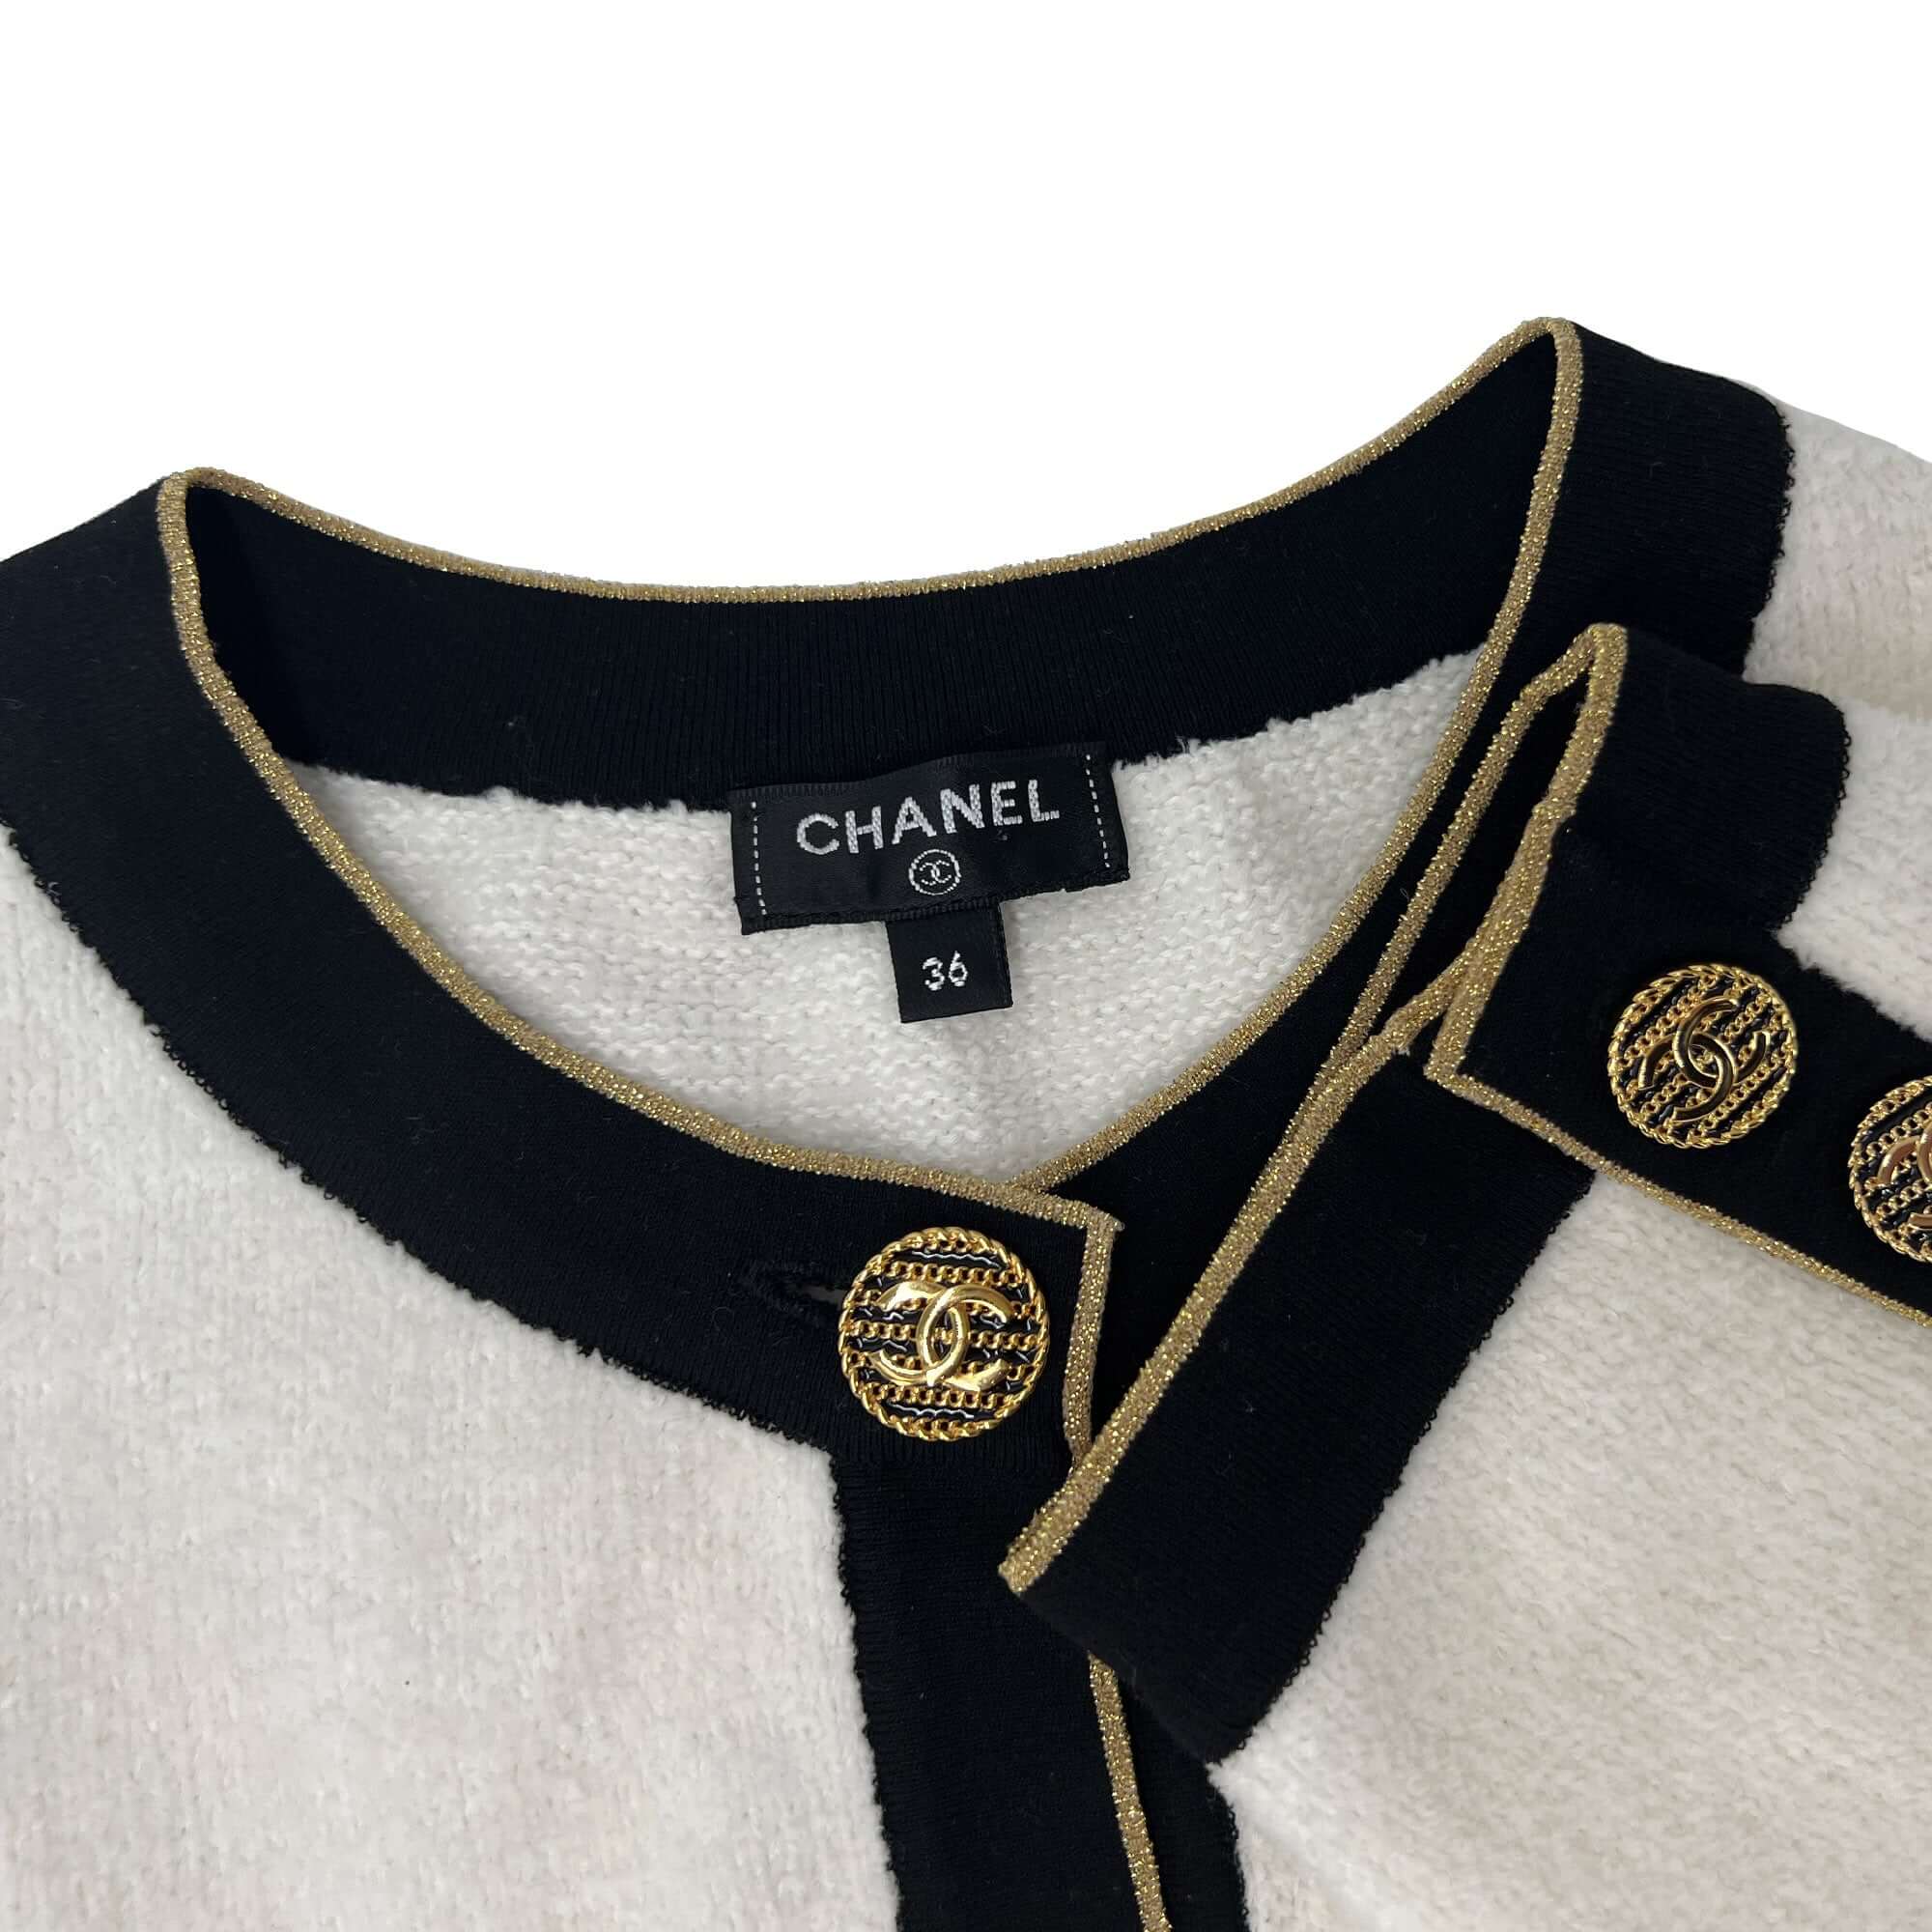 Chanel cardigan